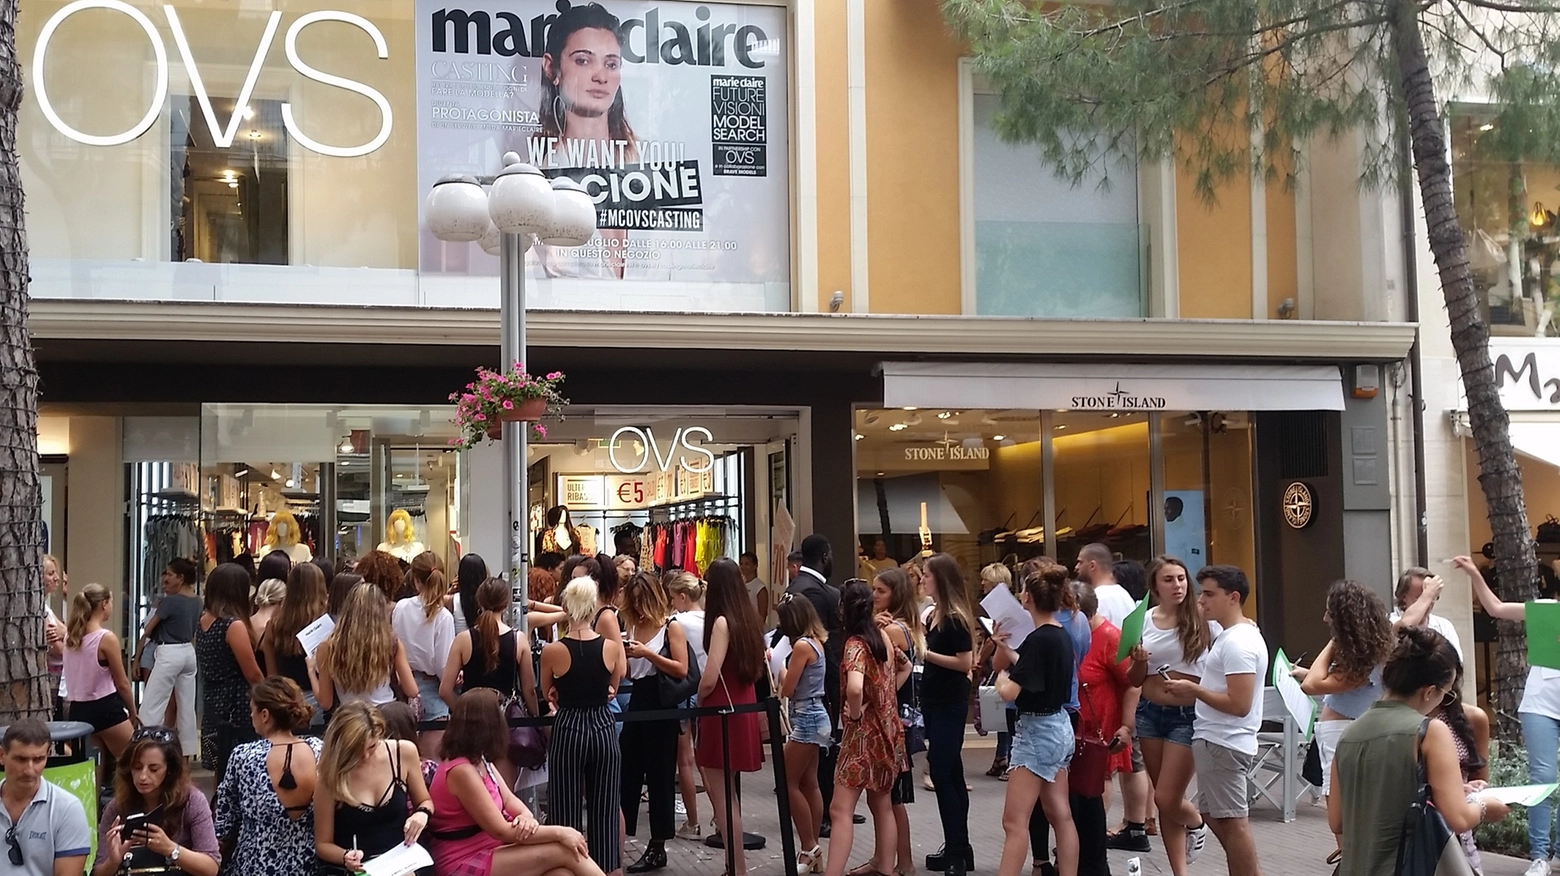 Casting Marie Claire e Ovs 2017, centinaia di ragazze in fila a Riccione